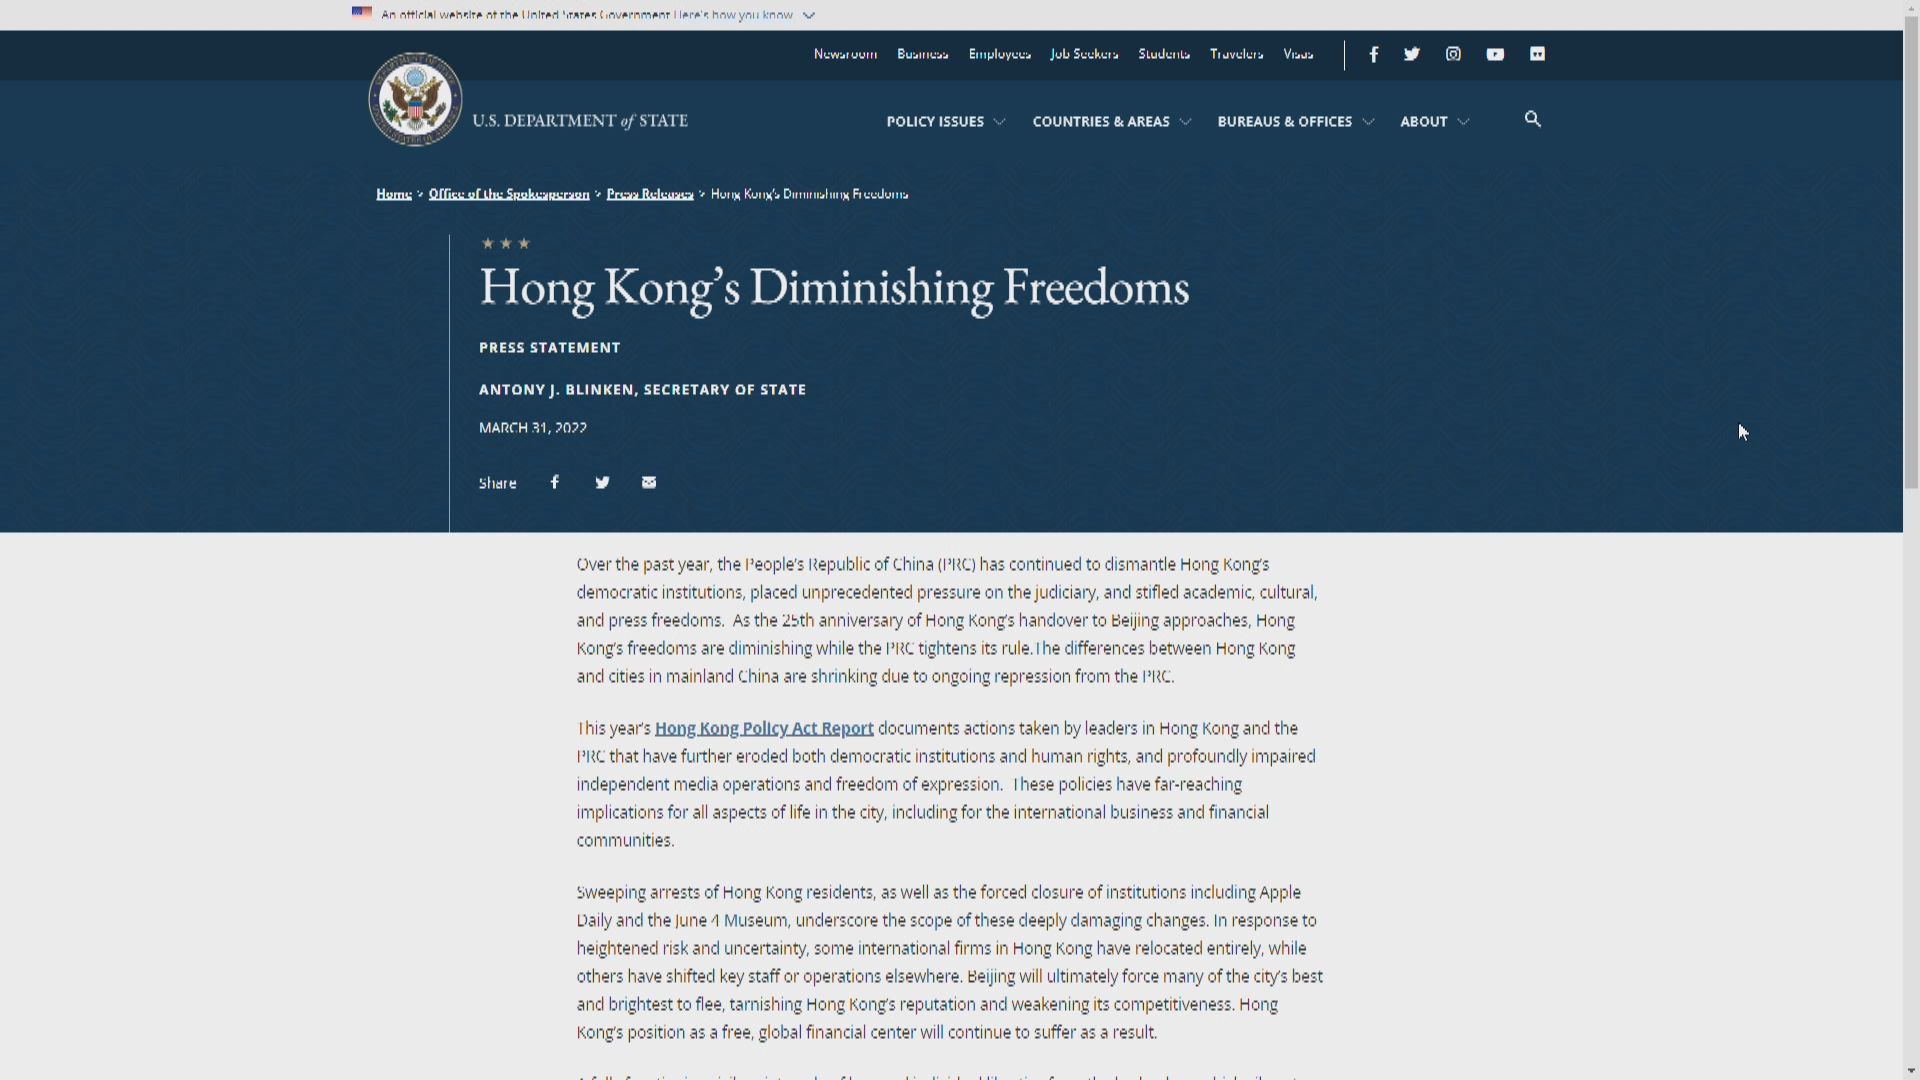 英美發表報告指香港民主自由持續受到打壓